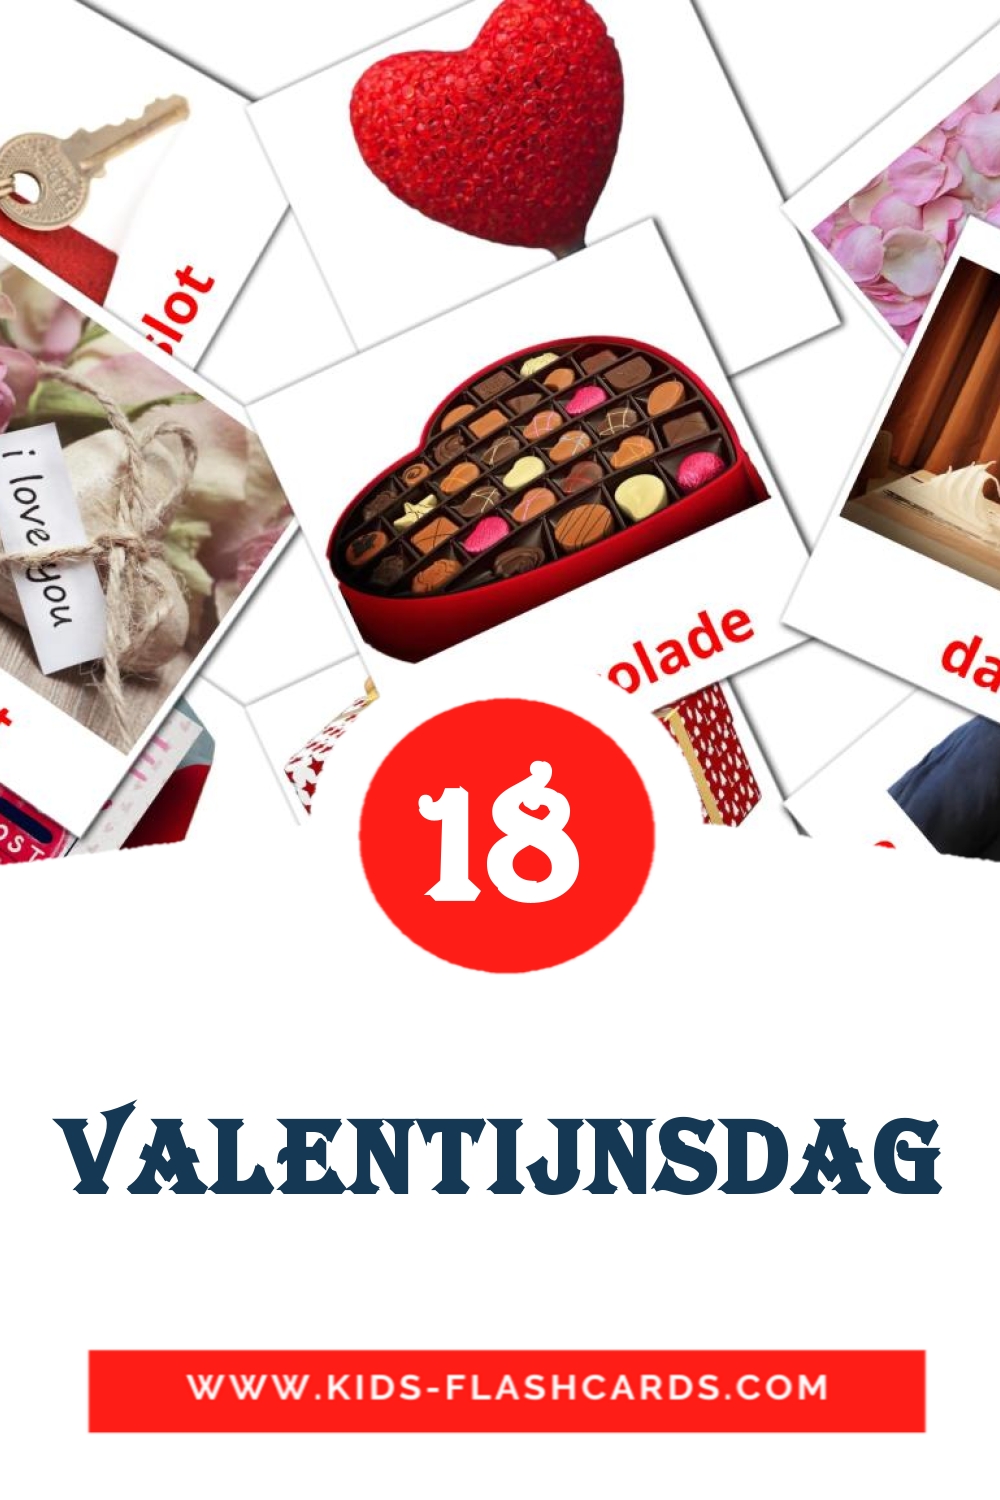 18 tarjetas didacticas de Valentijnsdag para el jardín de infancia en holandés